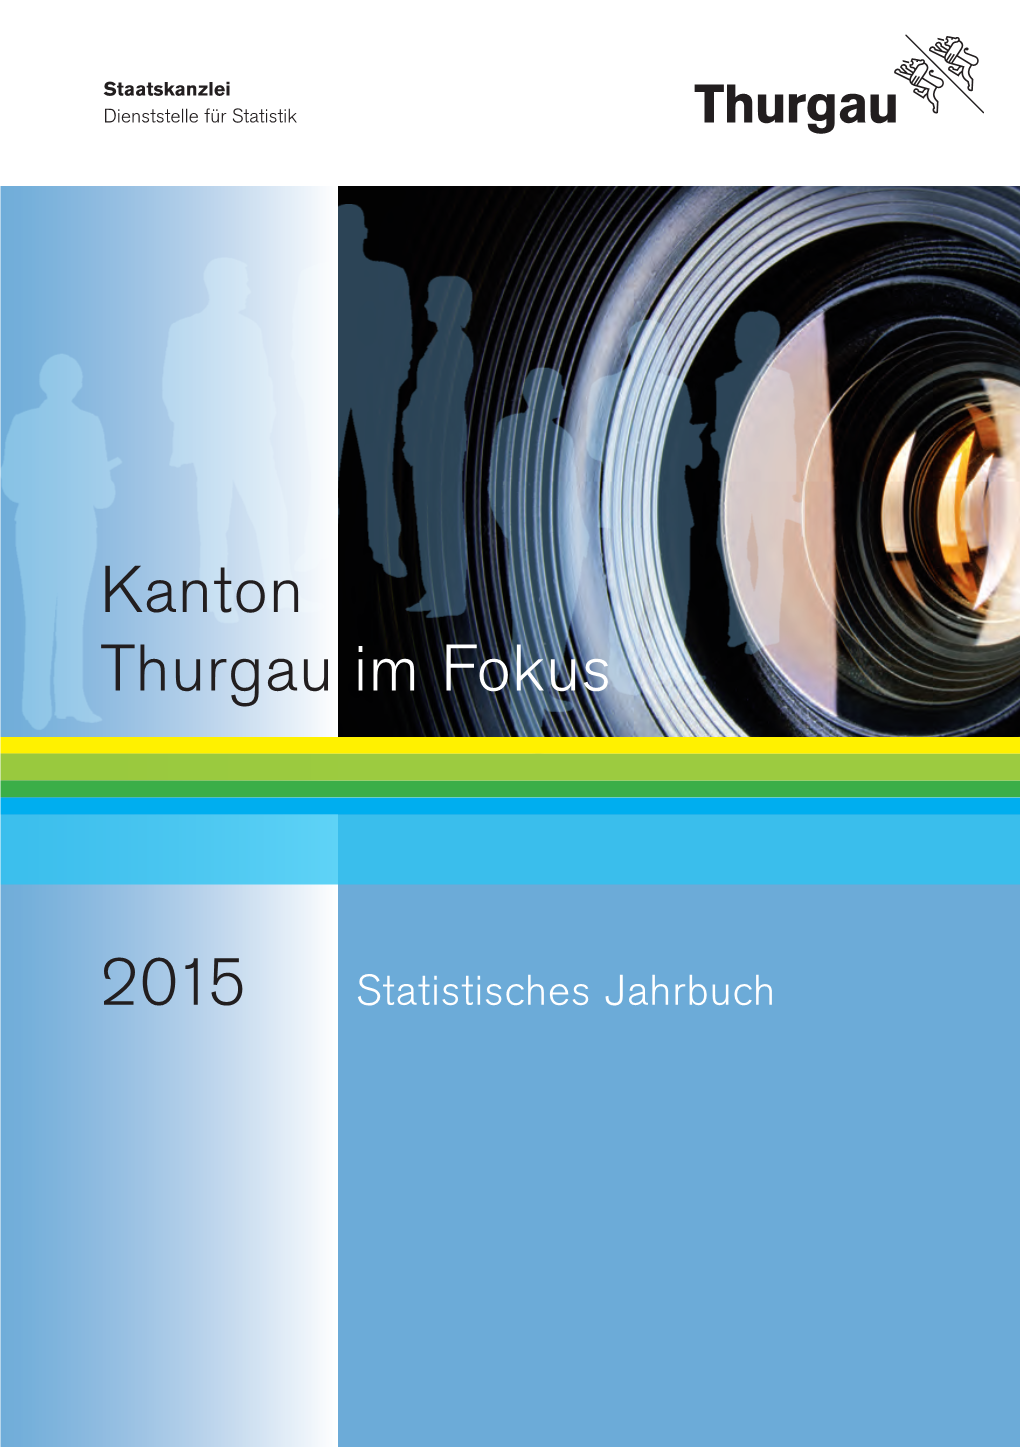 Statistisches Jahrbuch 2015 150915